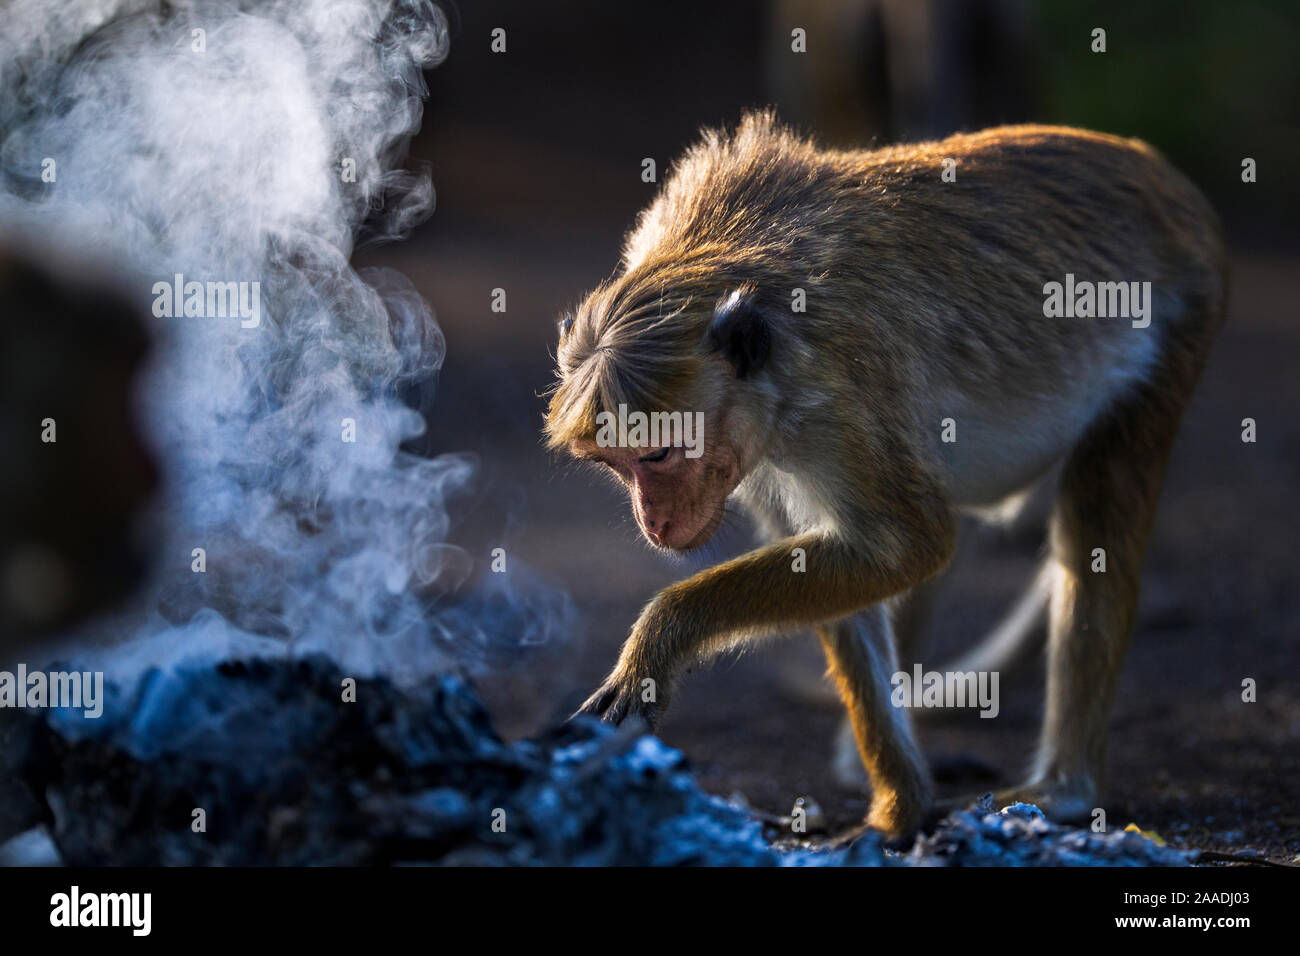 Toque macaque (Macaca sinica sinica) investigating a fire. Polonnaruwa, Sri Lanka February. Stock Photo